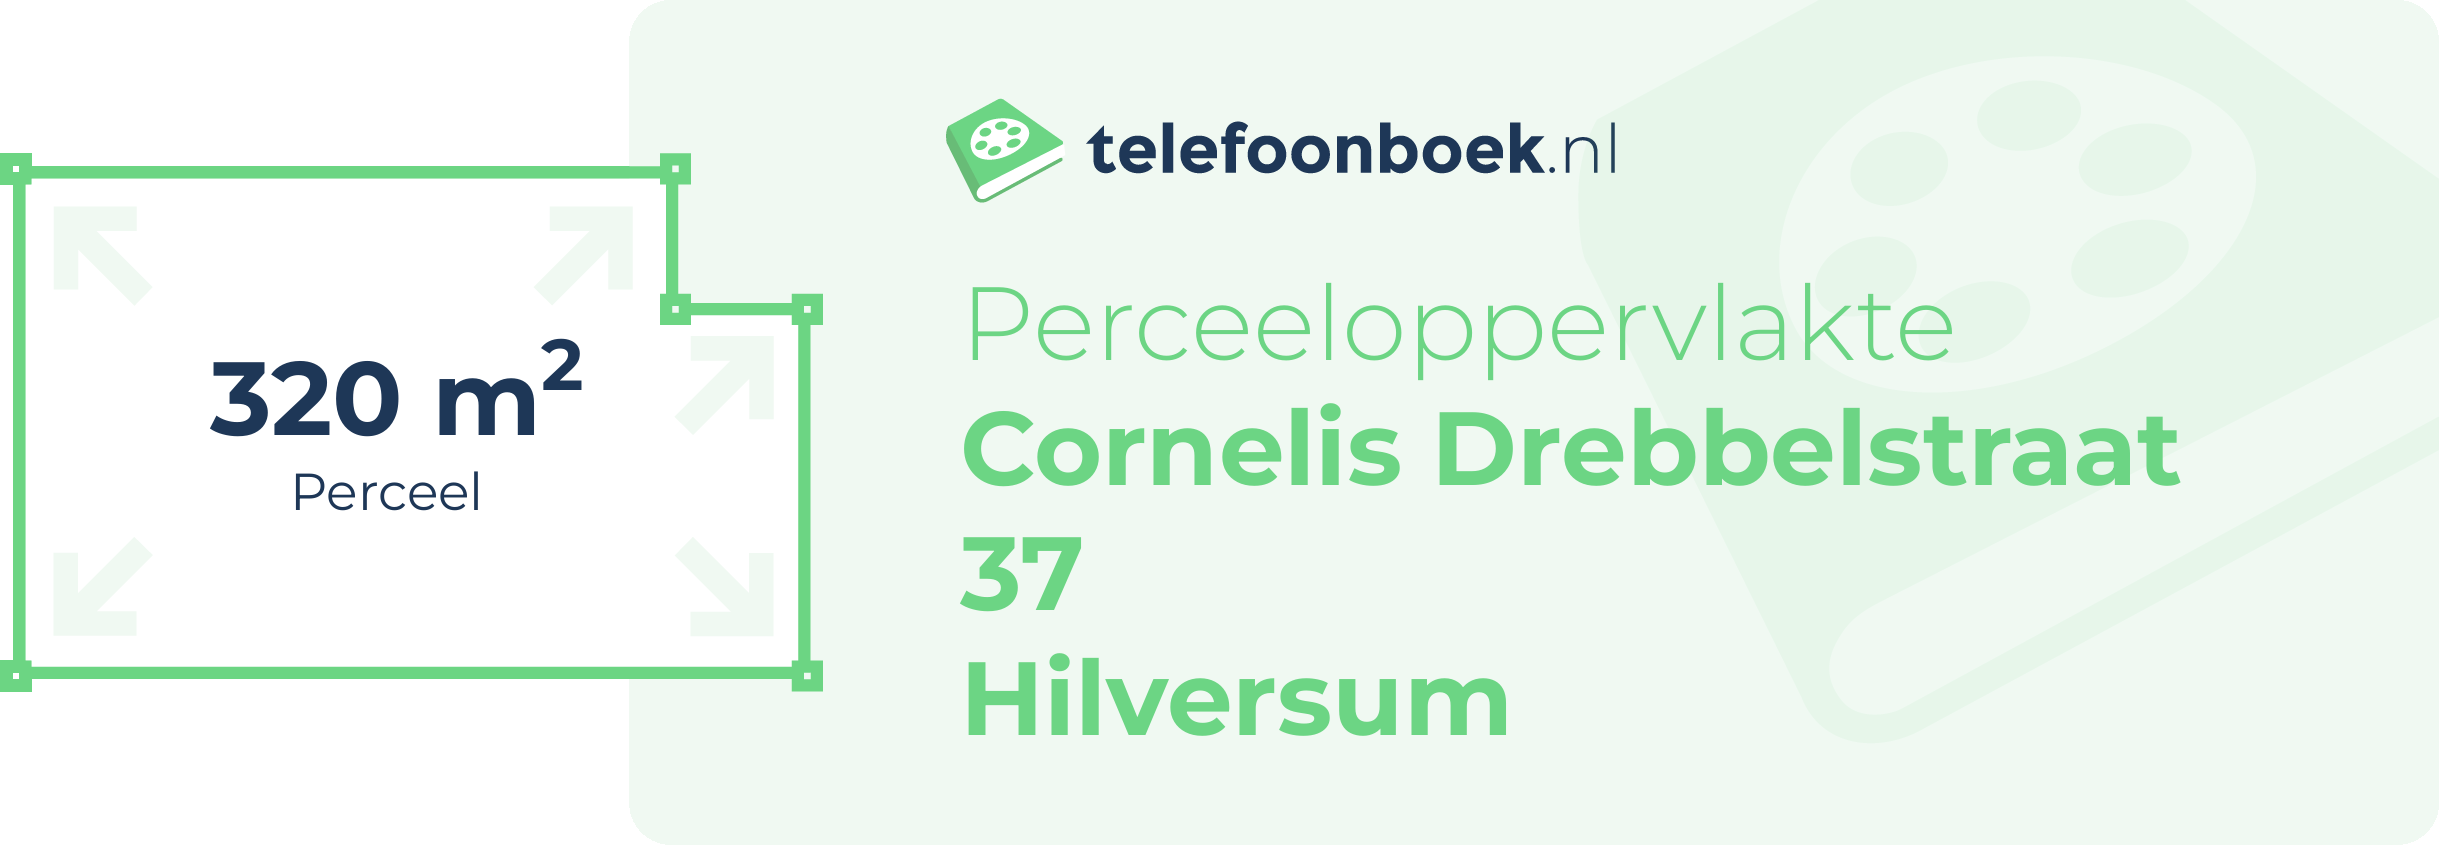 Perceeloppervlakte Cornelis Drebbelstraat 37 Hilversum